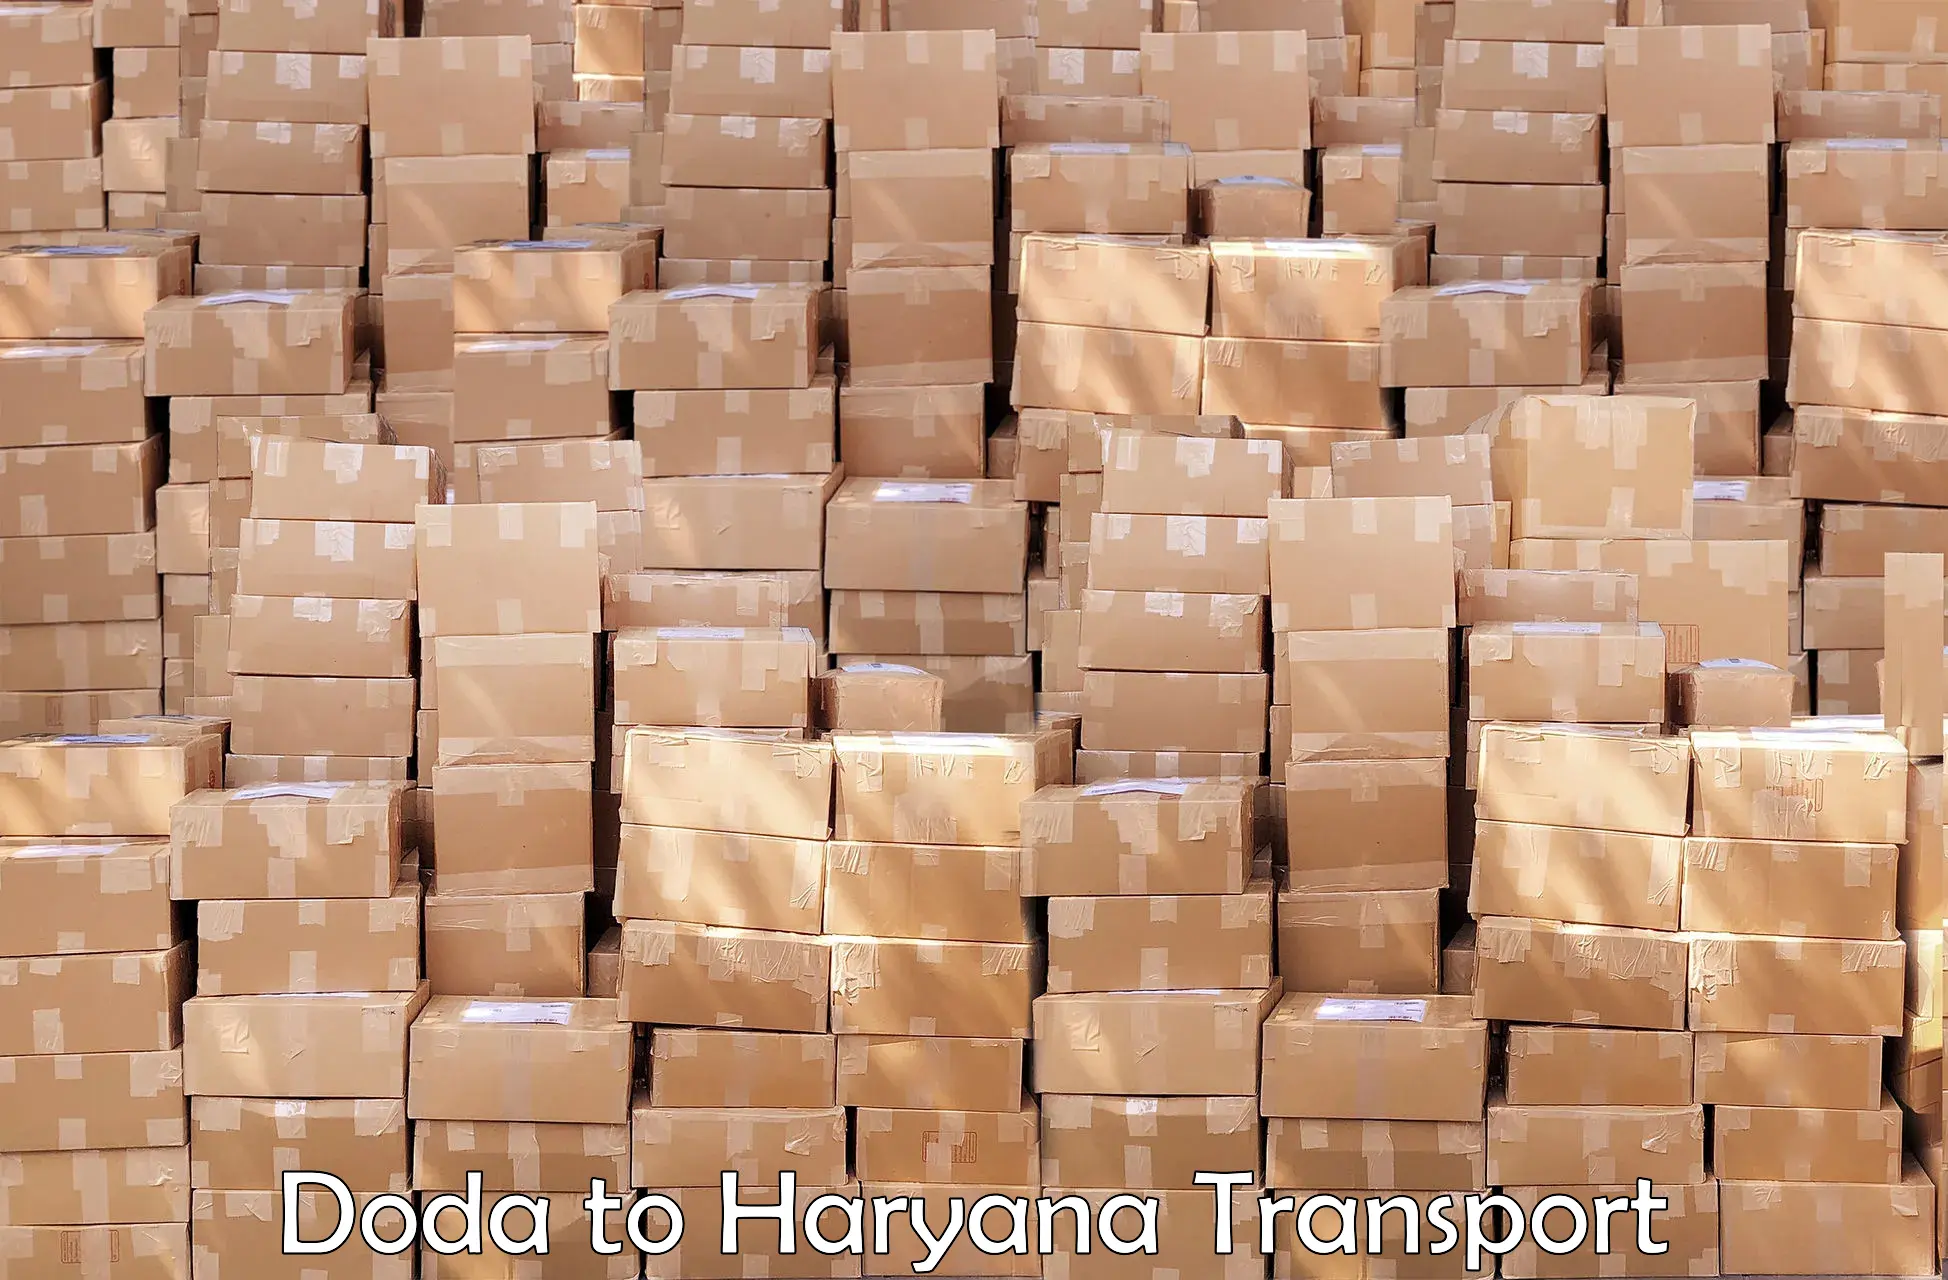 Daily transport service Doda to Haryana